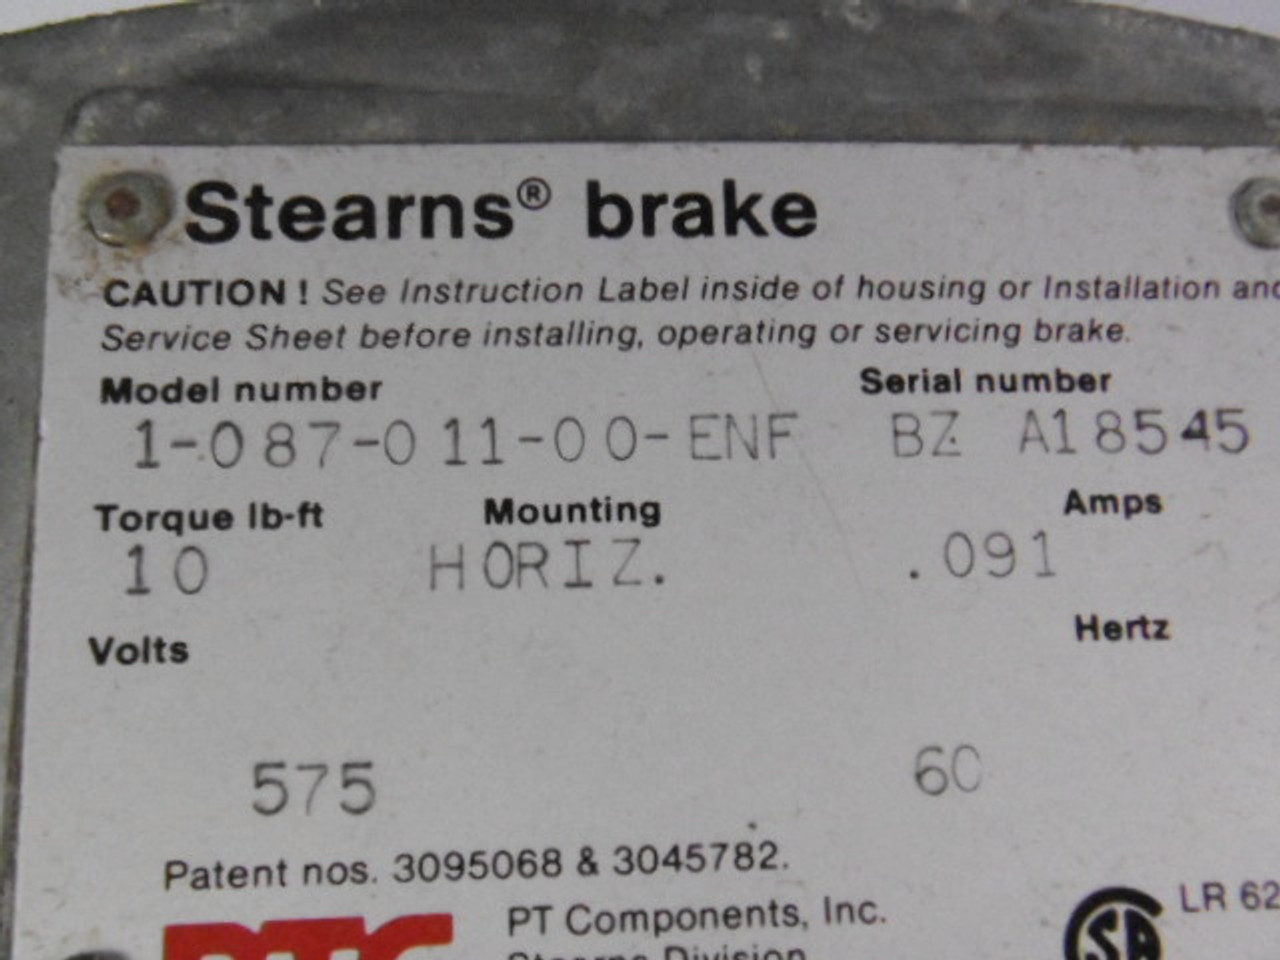 Stearns 1-087-011-00-ENF Spring-Set Disc Brake .091A 575V 60Hz 1-1/8" USED